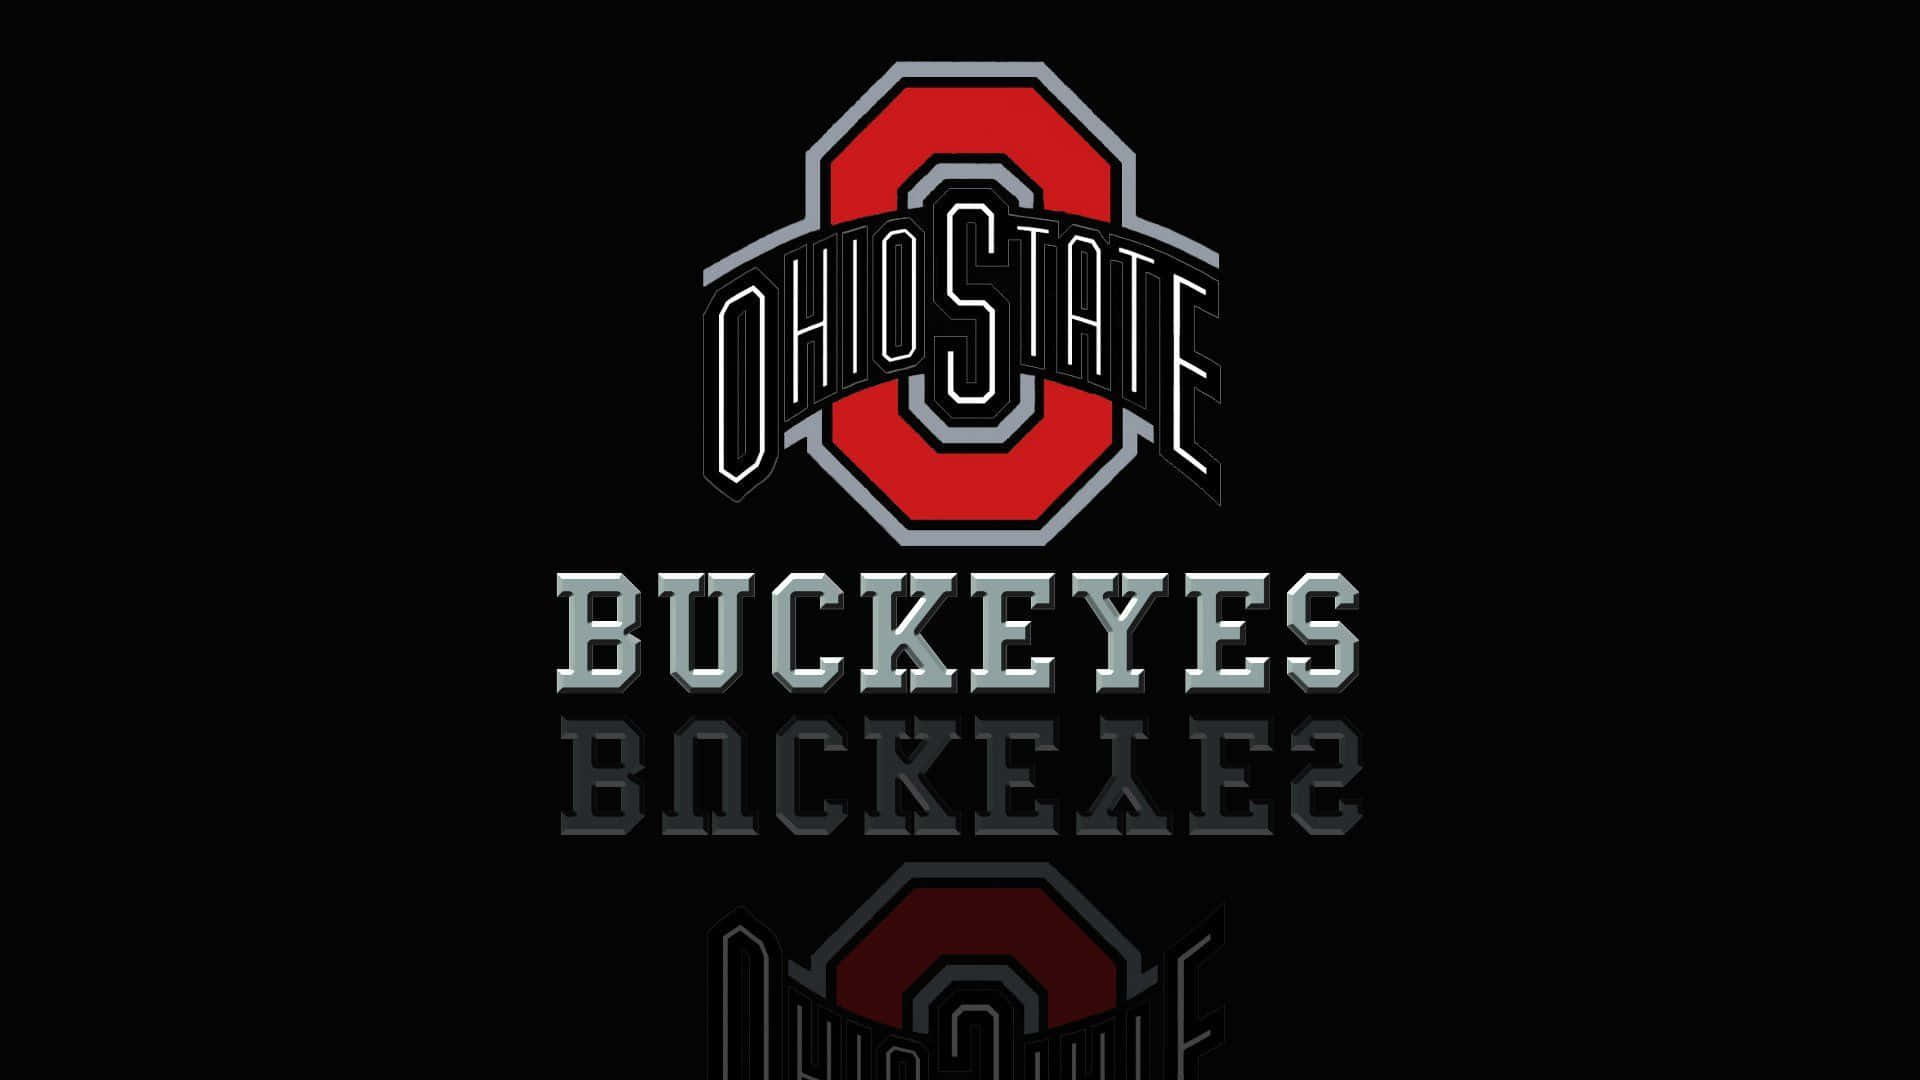 Svartyta Som Reflekterar Ohio State-logo. Wallpaper